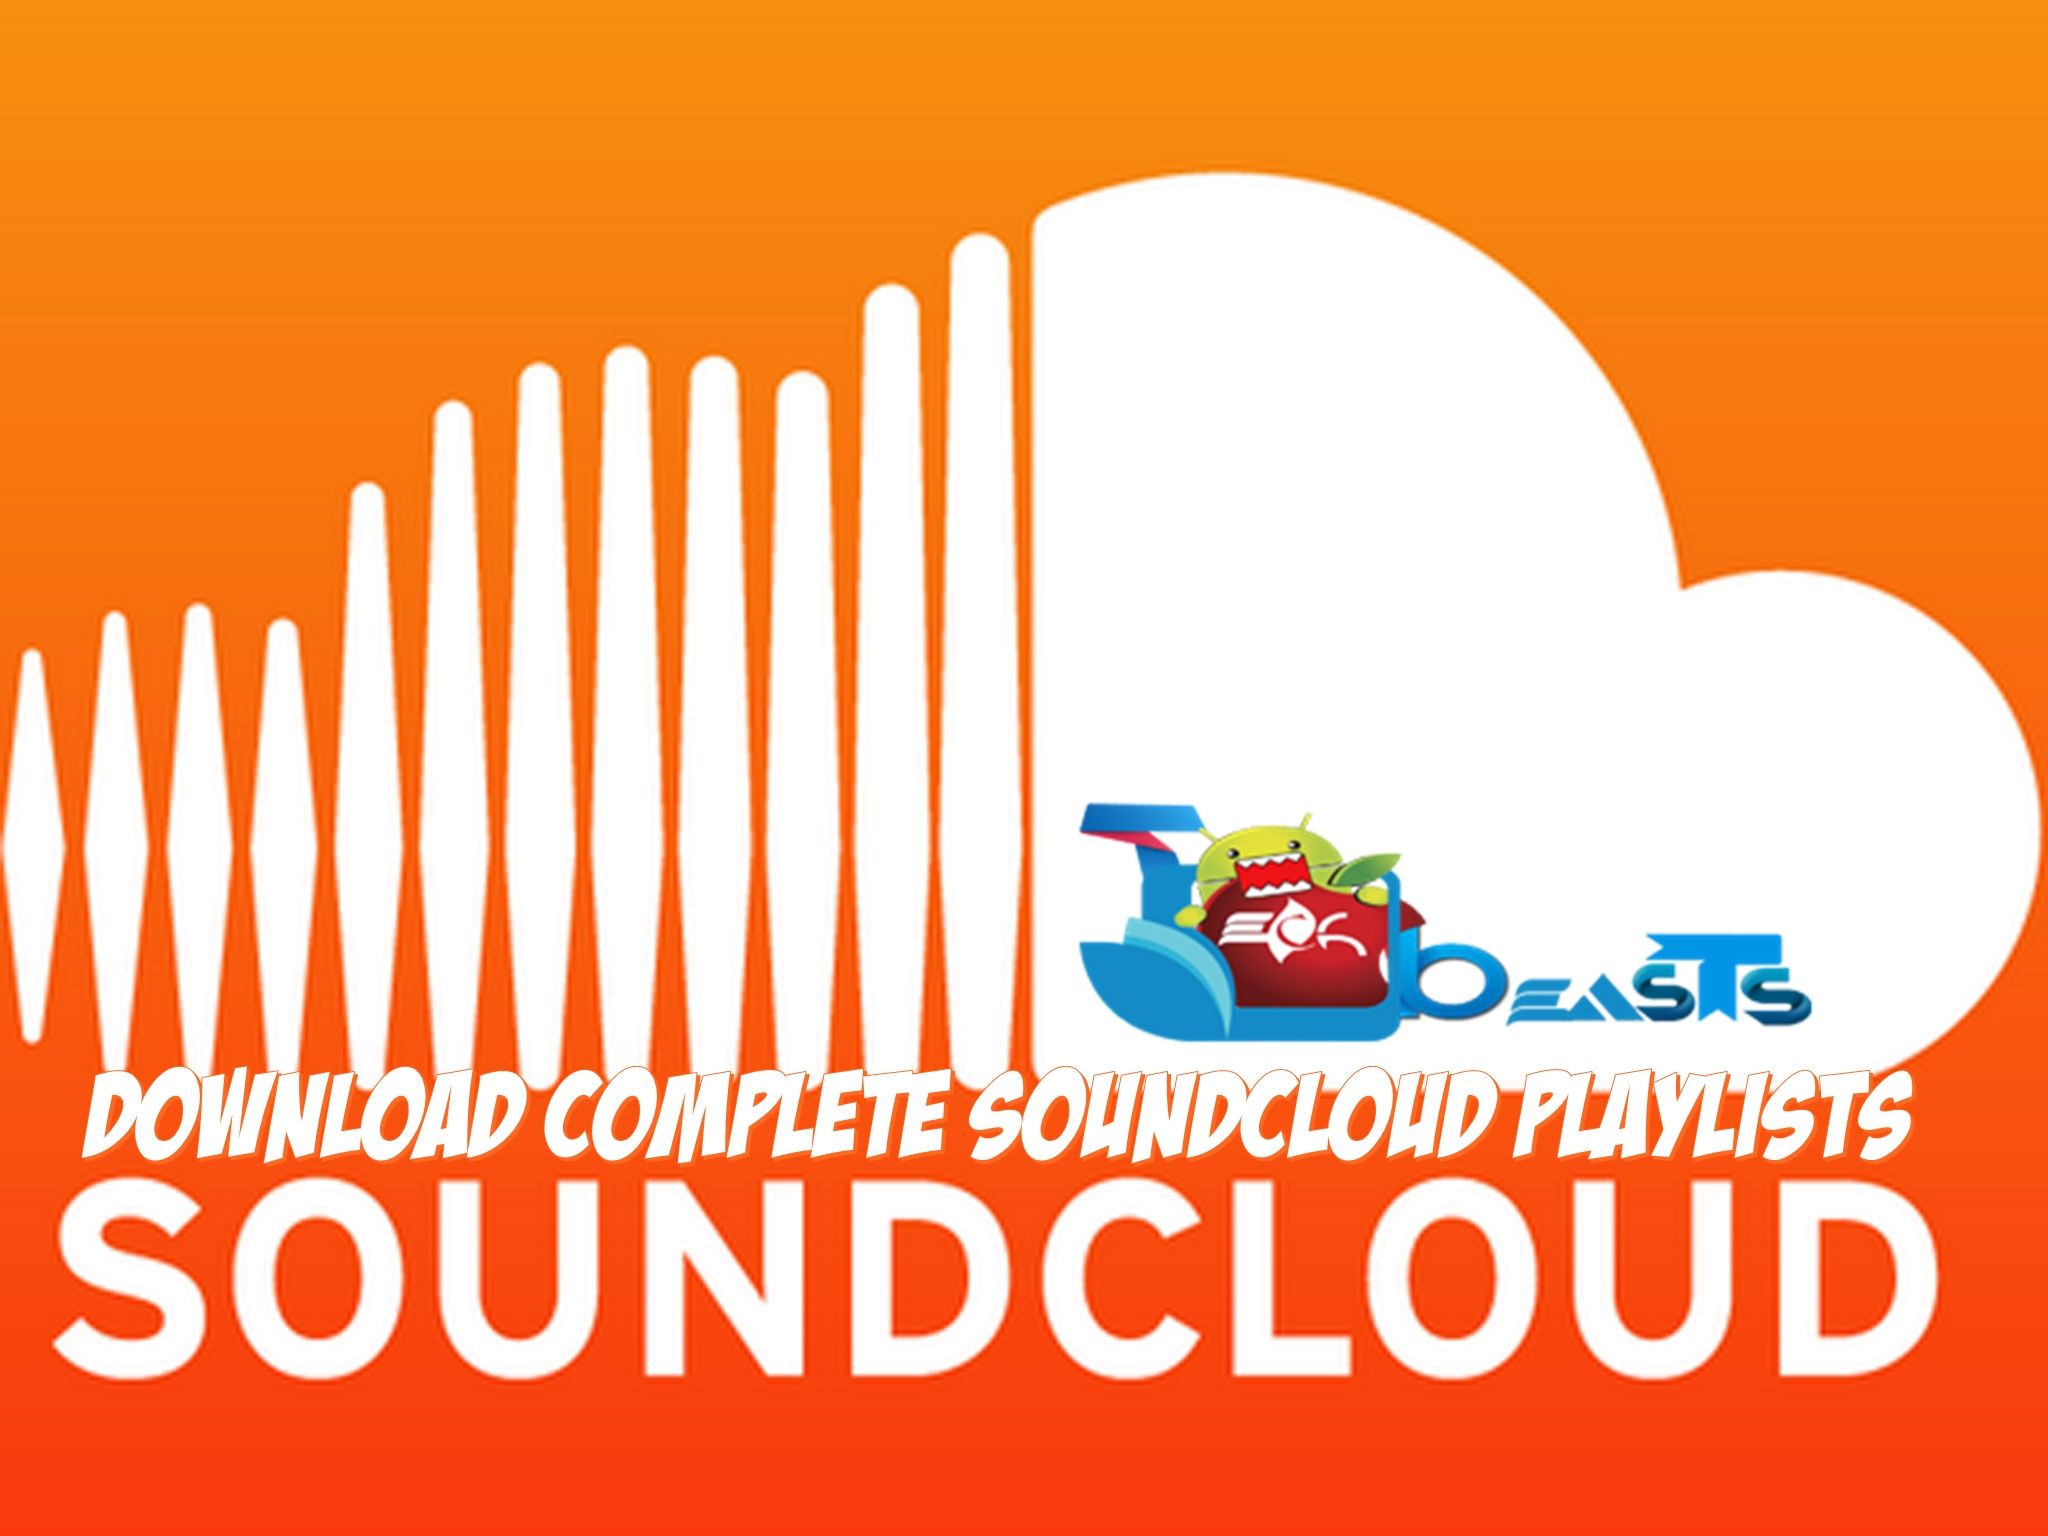  Download Complete SoundCloud Playlists